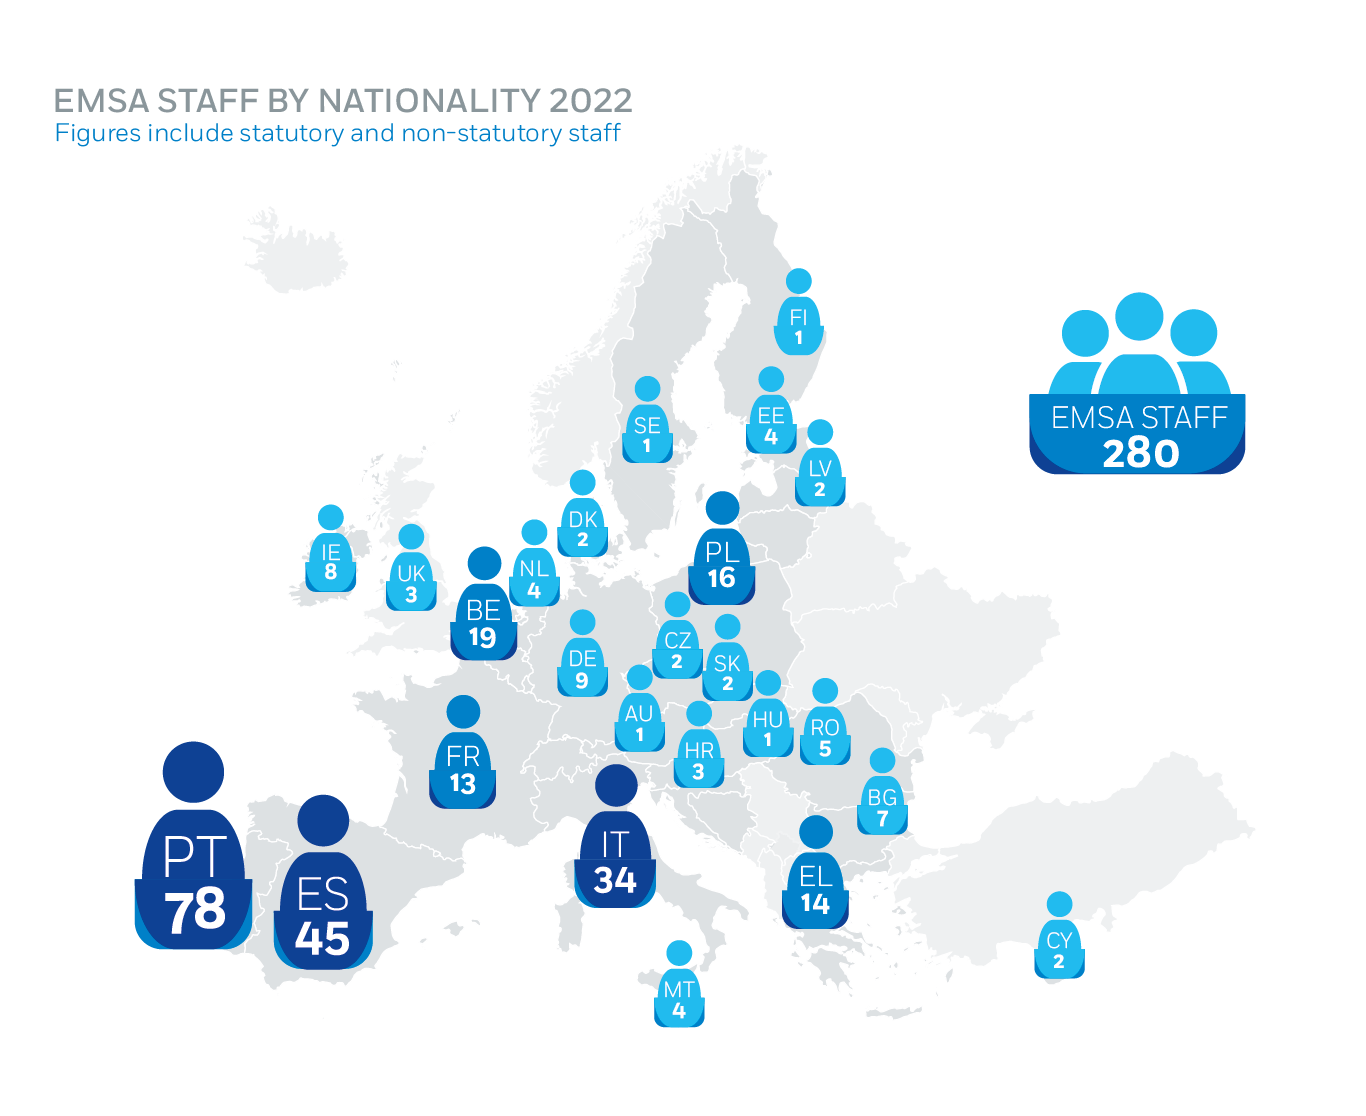 EMSA Staff by Nationality 2022 Image 1